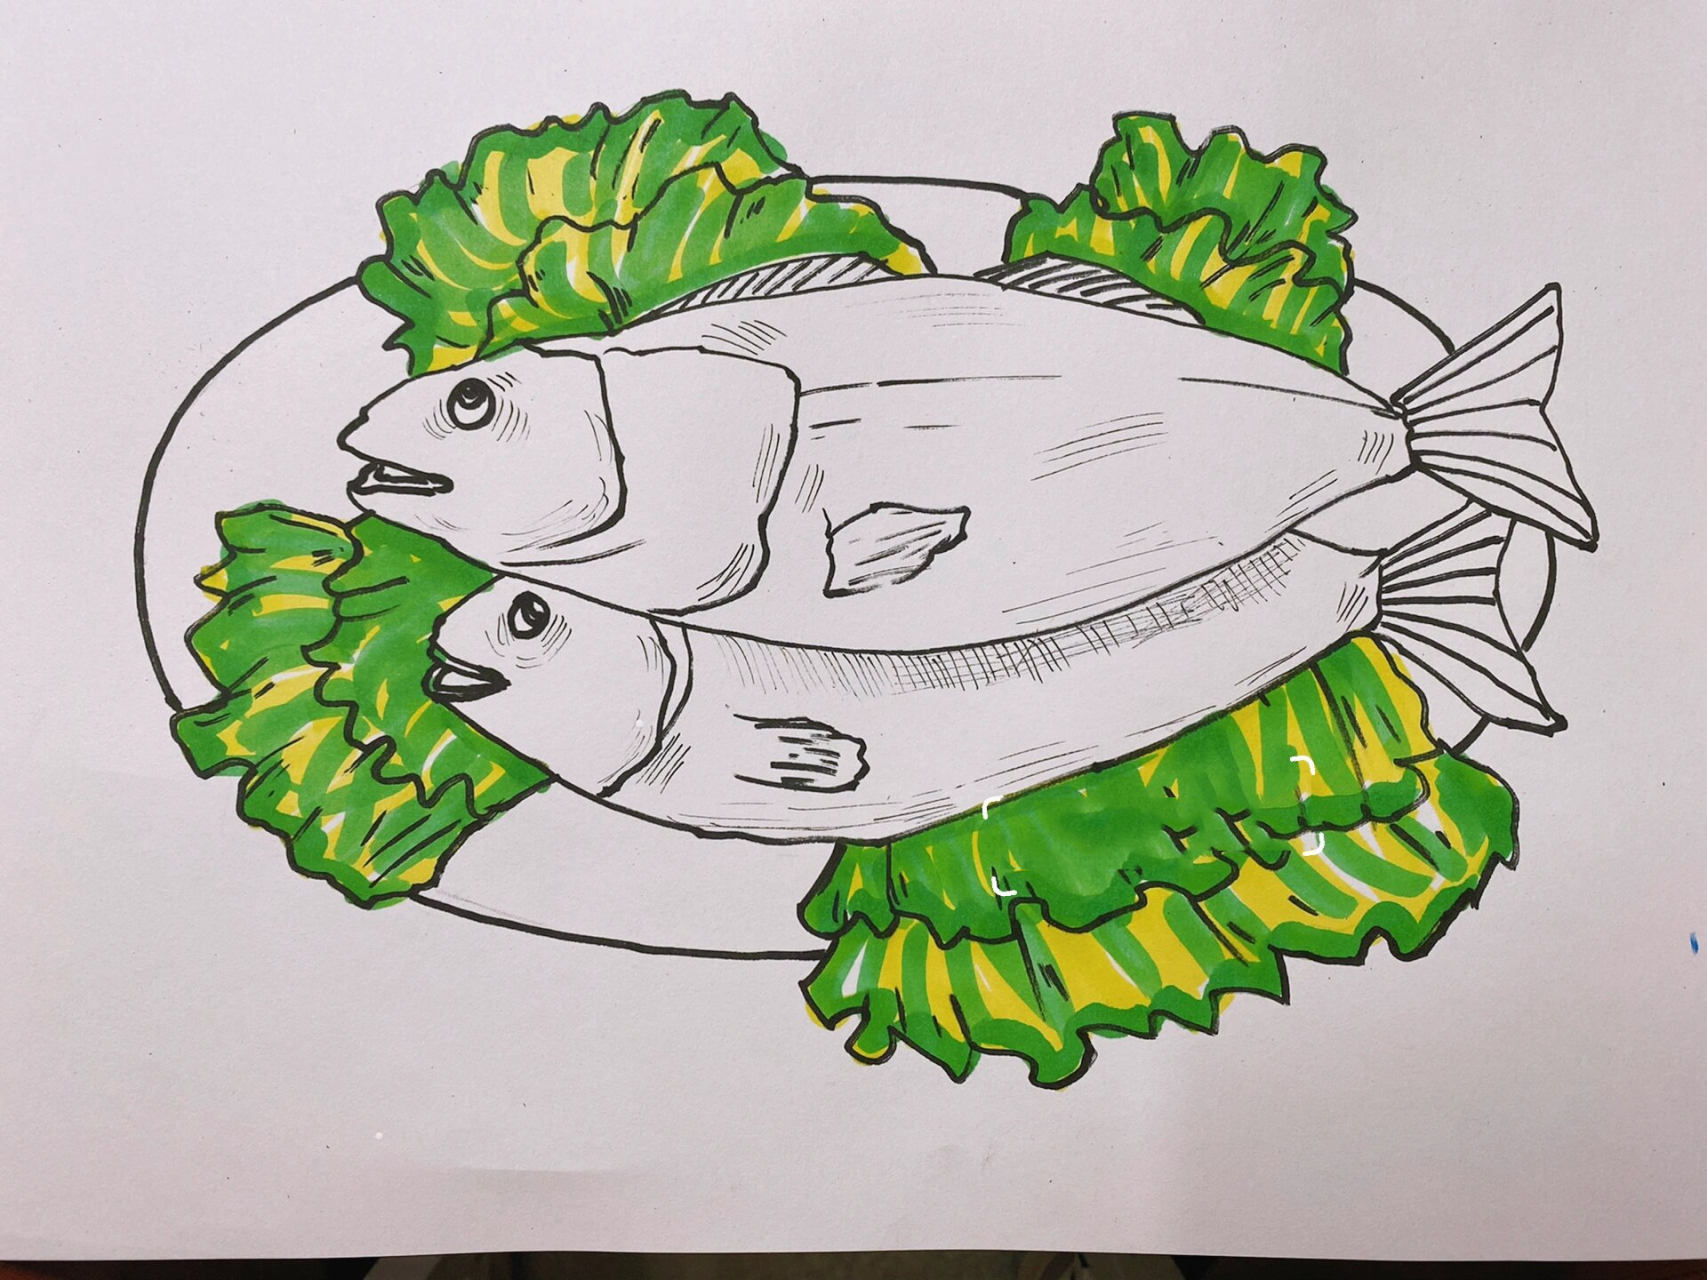 清蒸鱼简笔画带颜色的图片